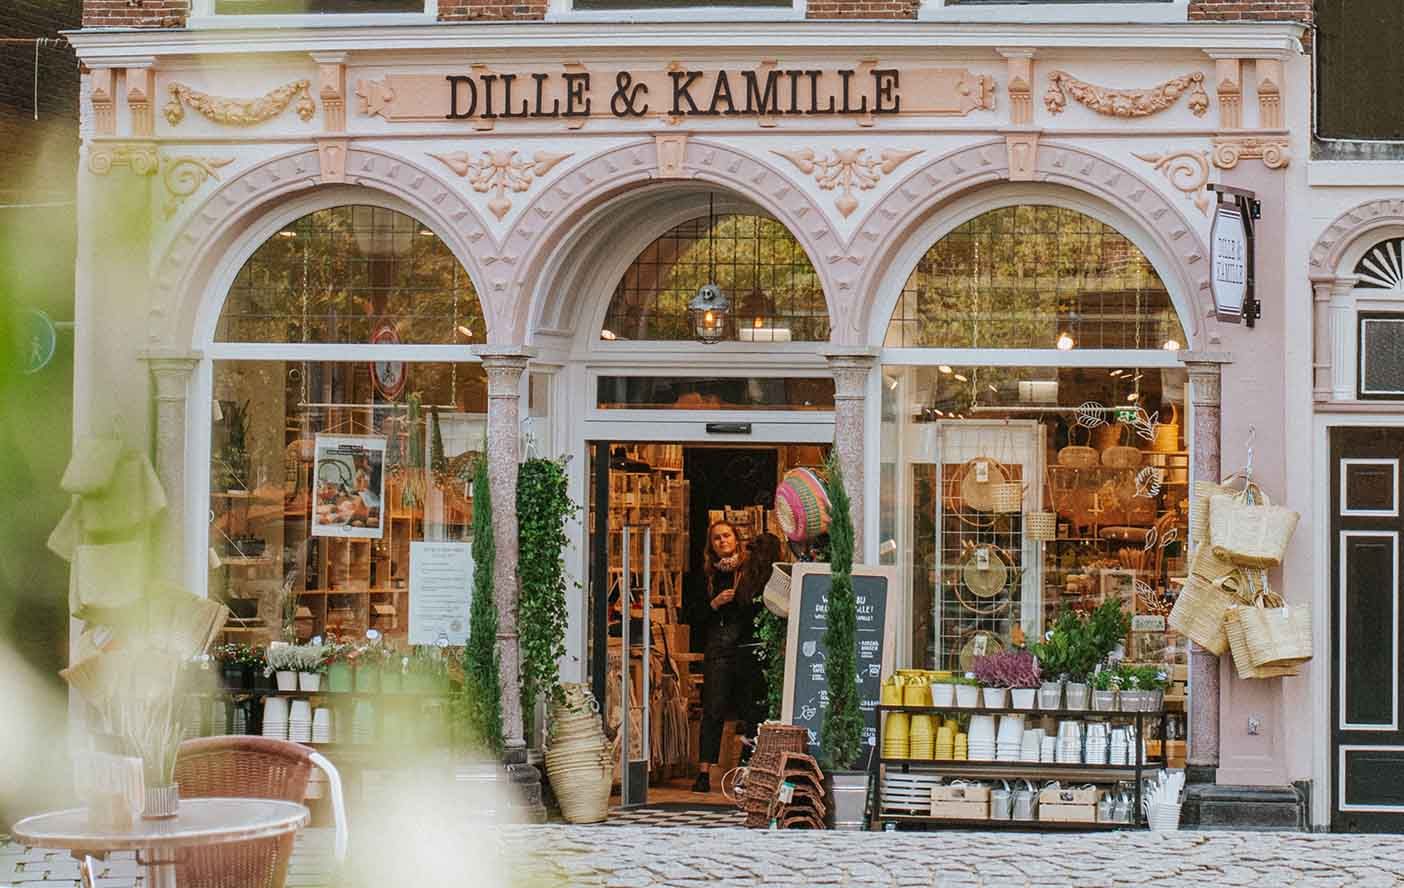 regeling grot Razernij Einlings yn Fryslân: Dille & Kamille opent nieuwe winkel in Leeuwarden |  Dille & Kamille